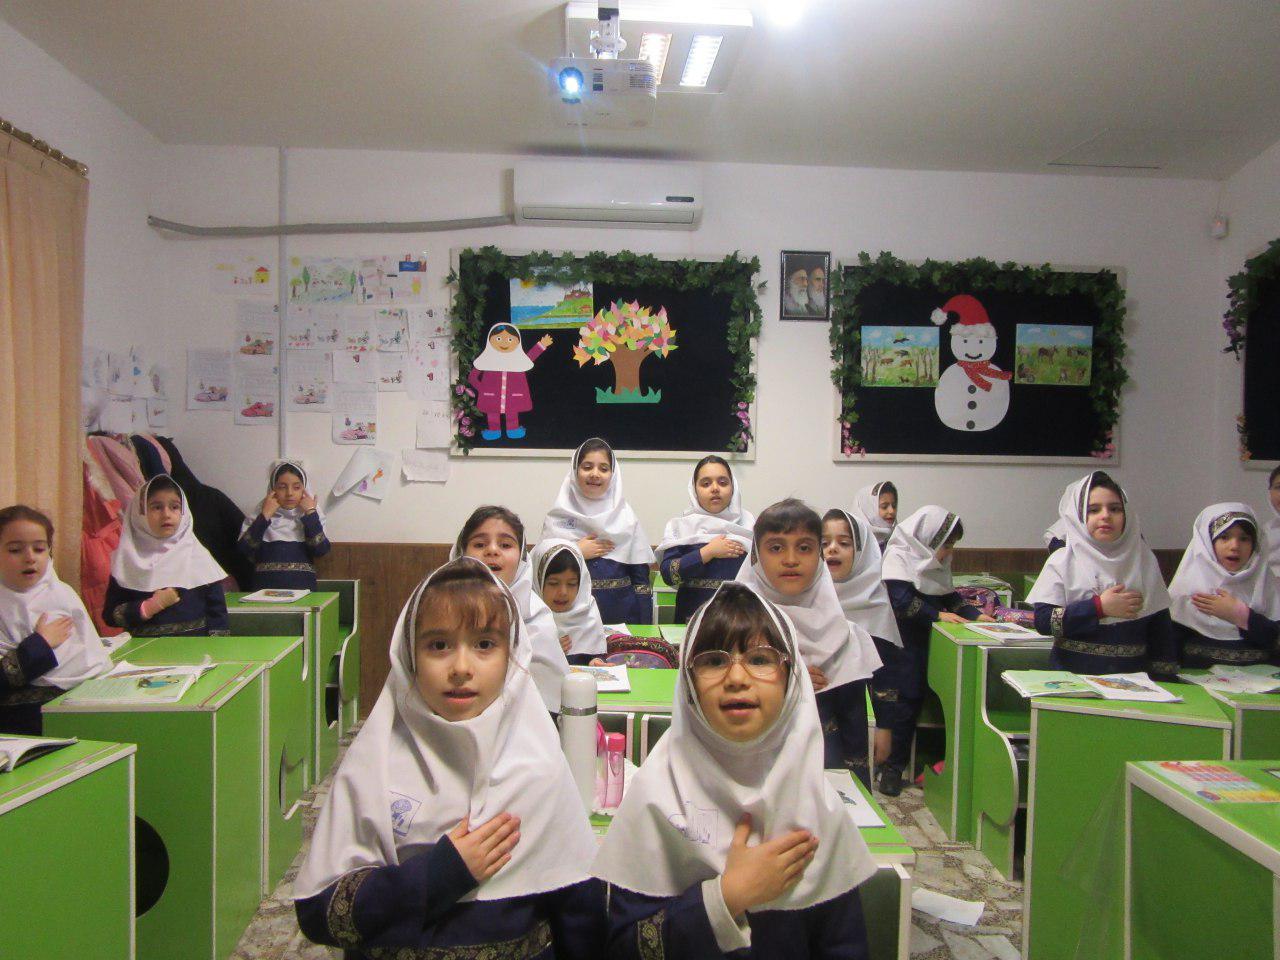 شروع درس میهن با سرود ای ایران کلاس اول خانم مهرگان